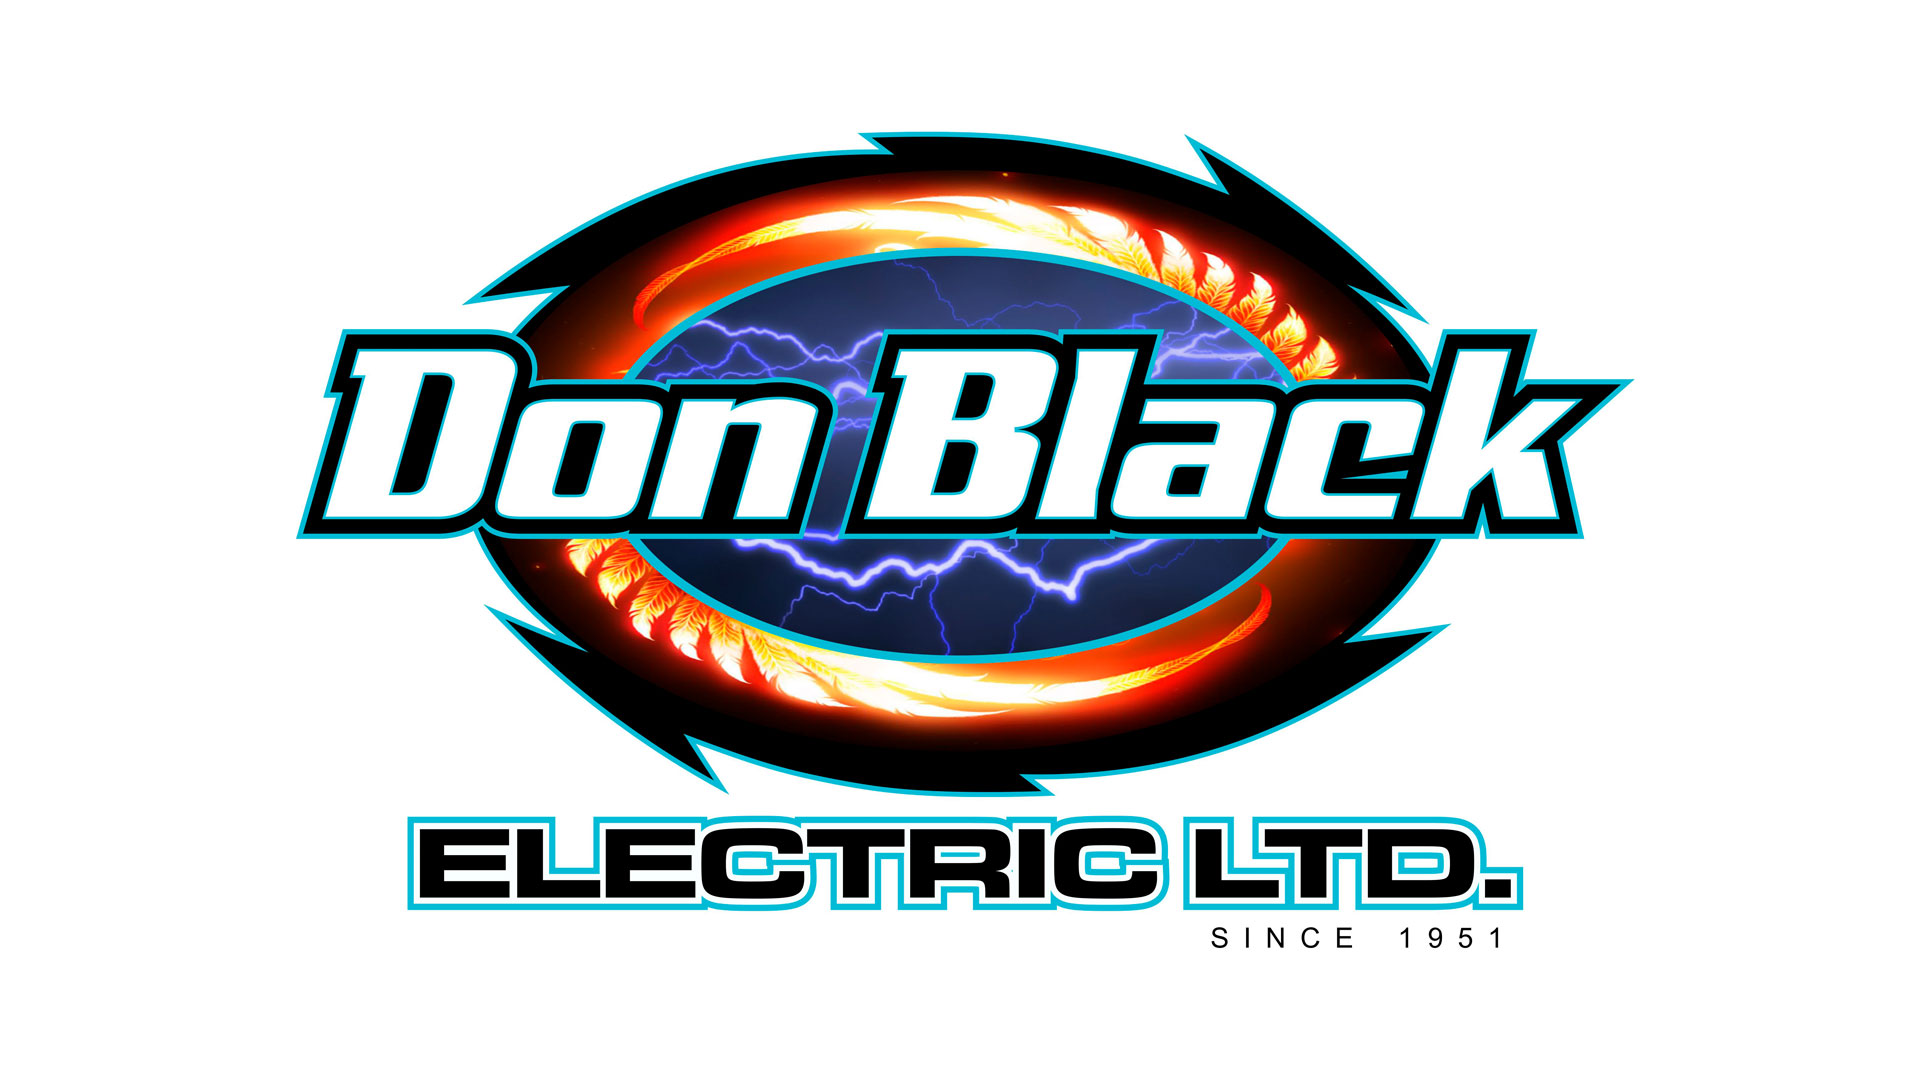 Don Black Electric logo